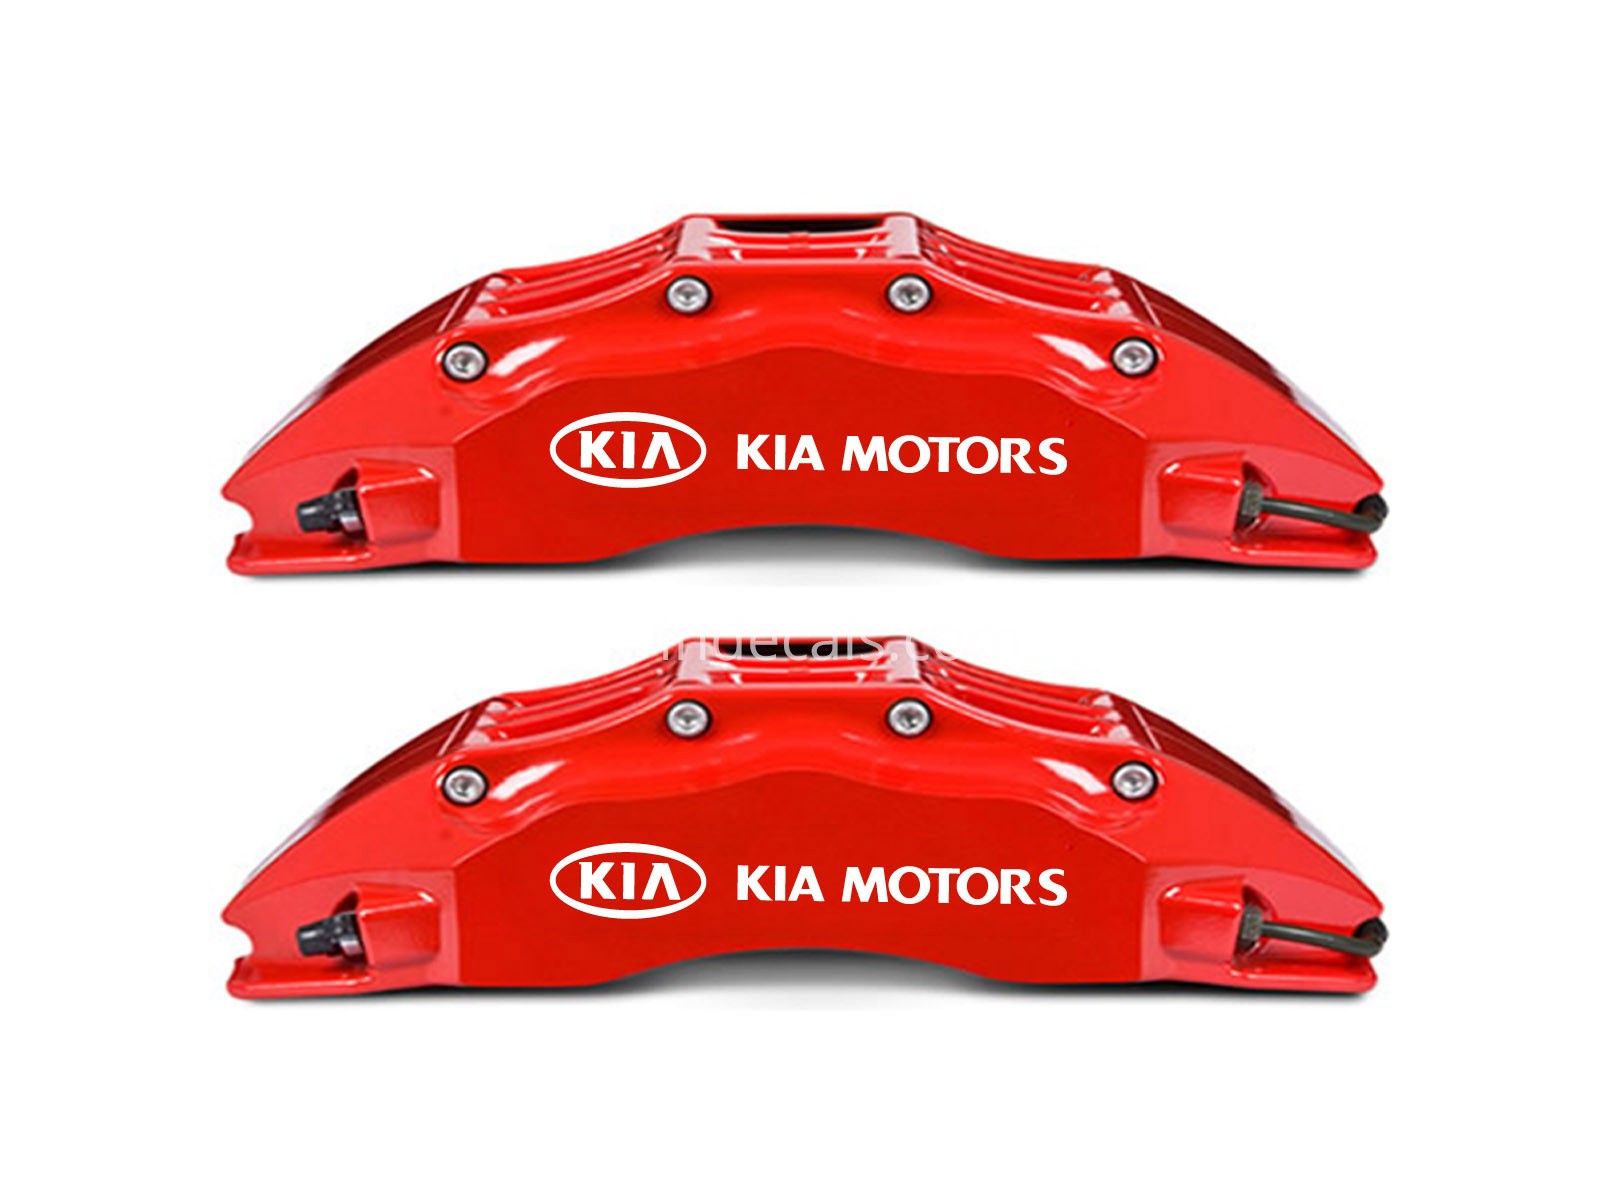 6 x Kia Stickers for Brakes - White